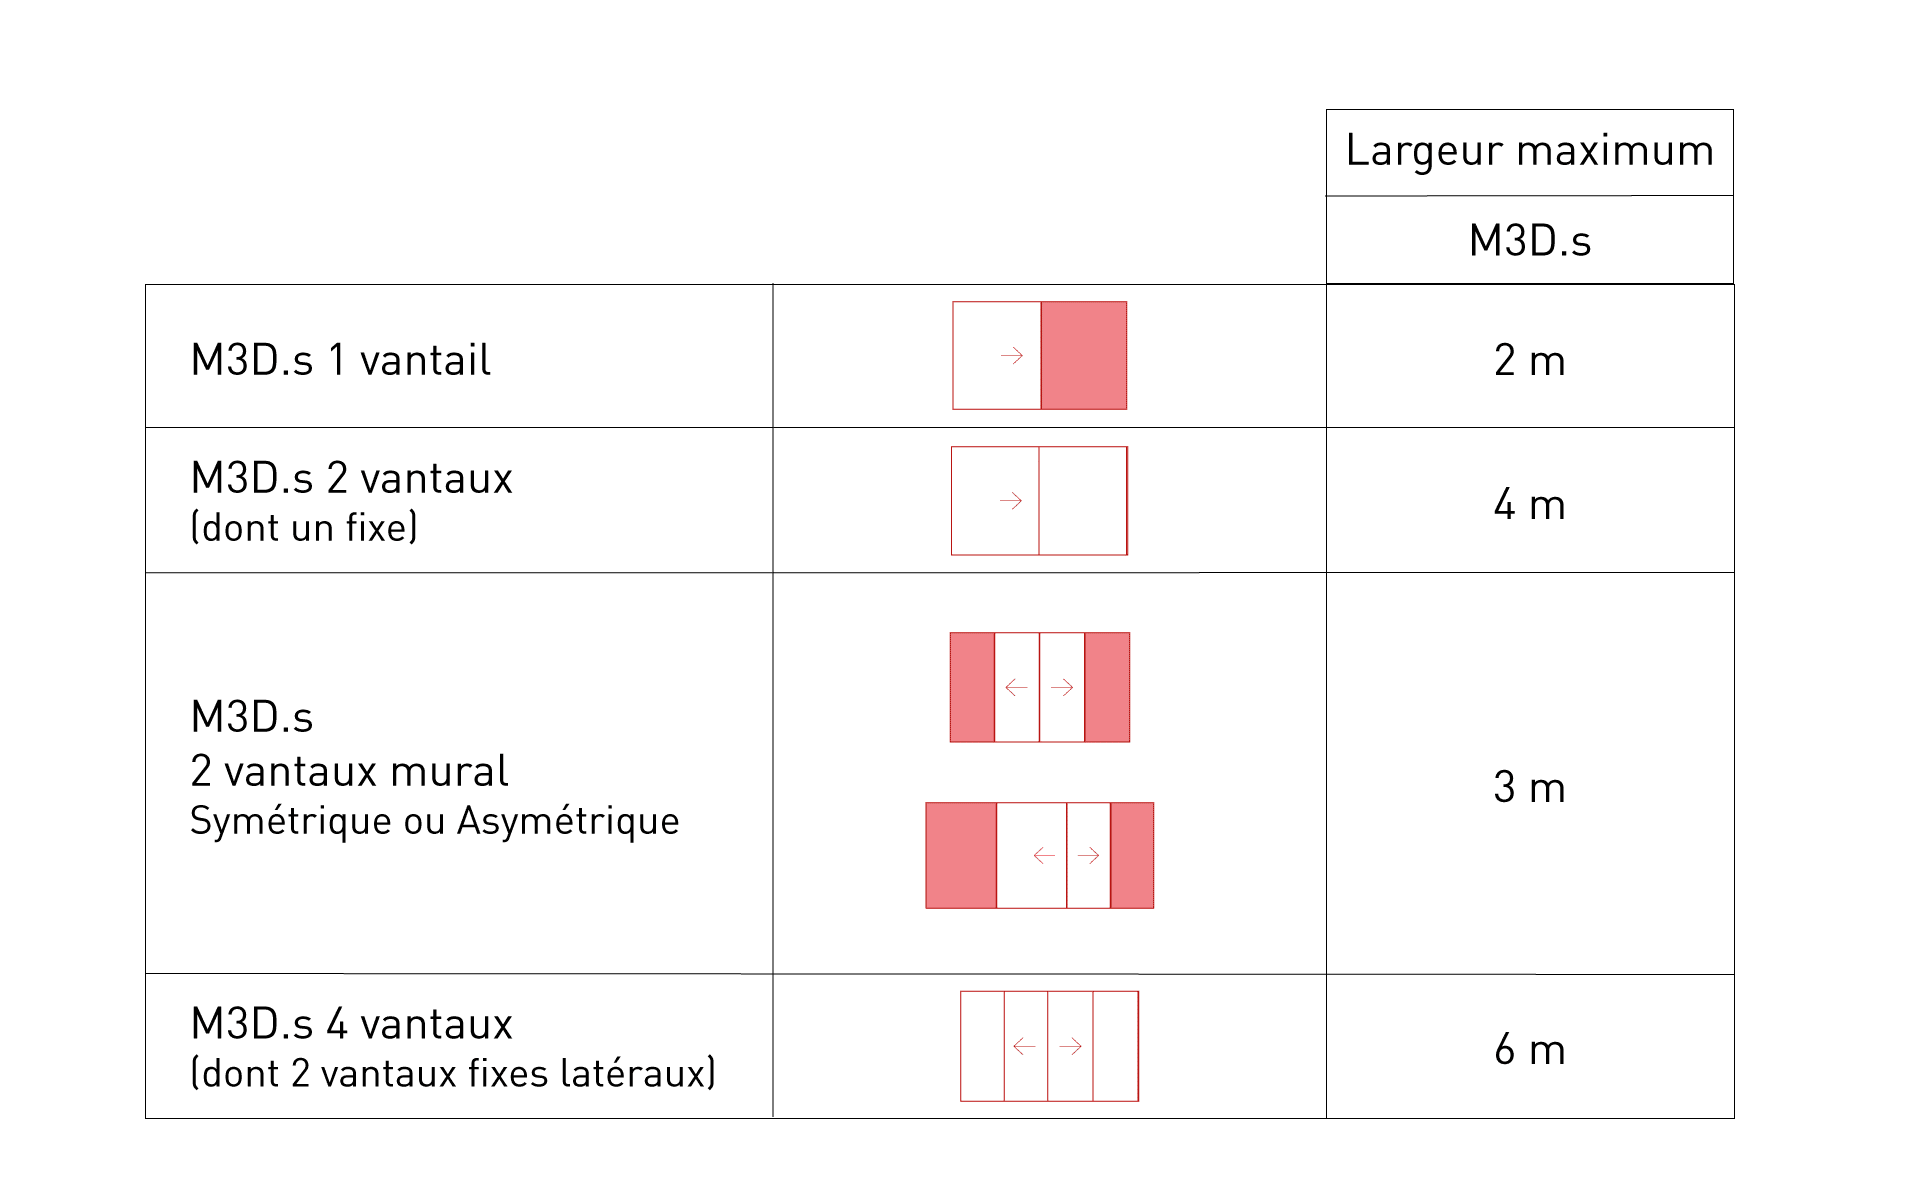 tableau de configurations m3d.s